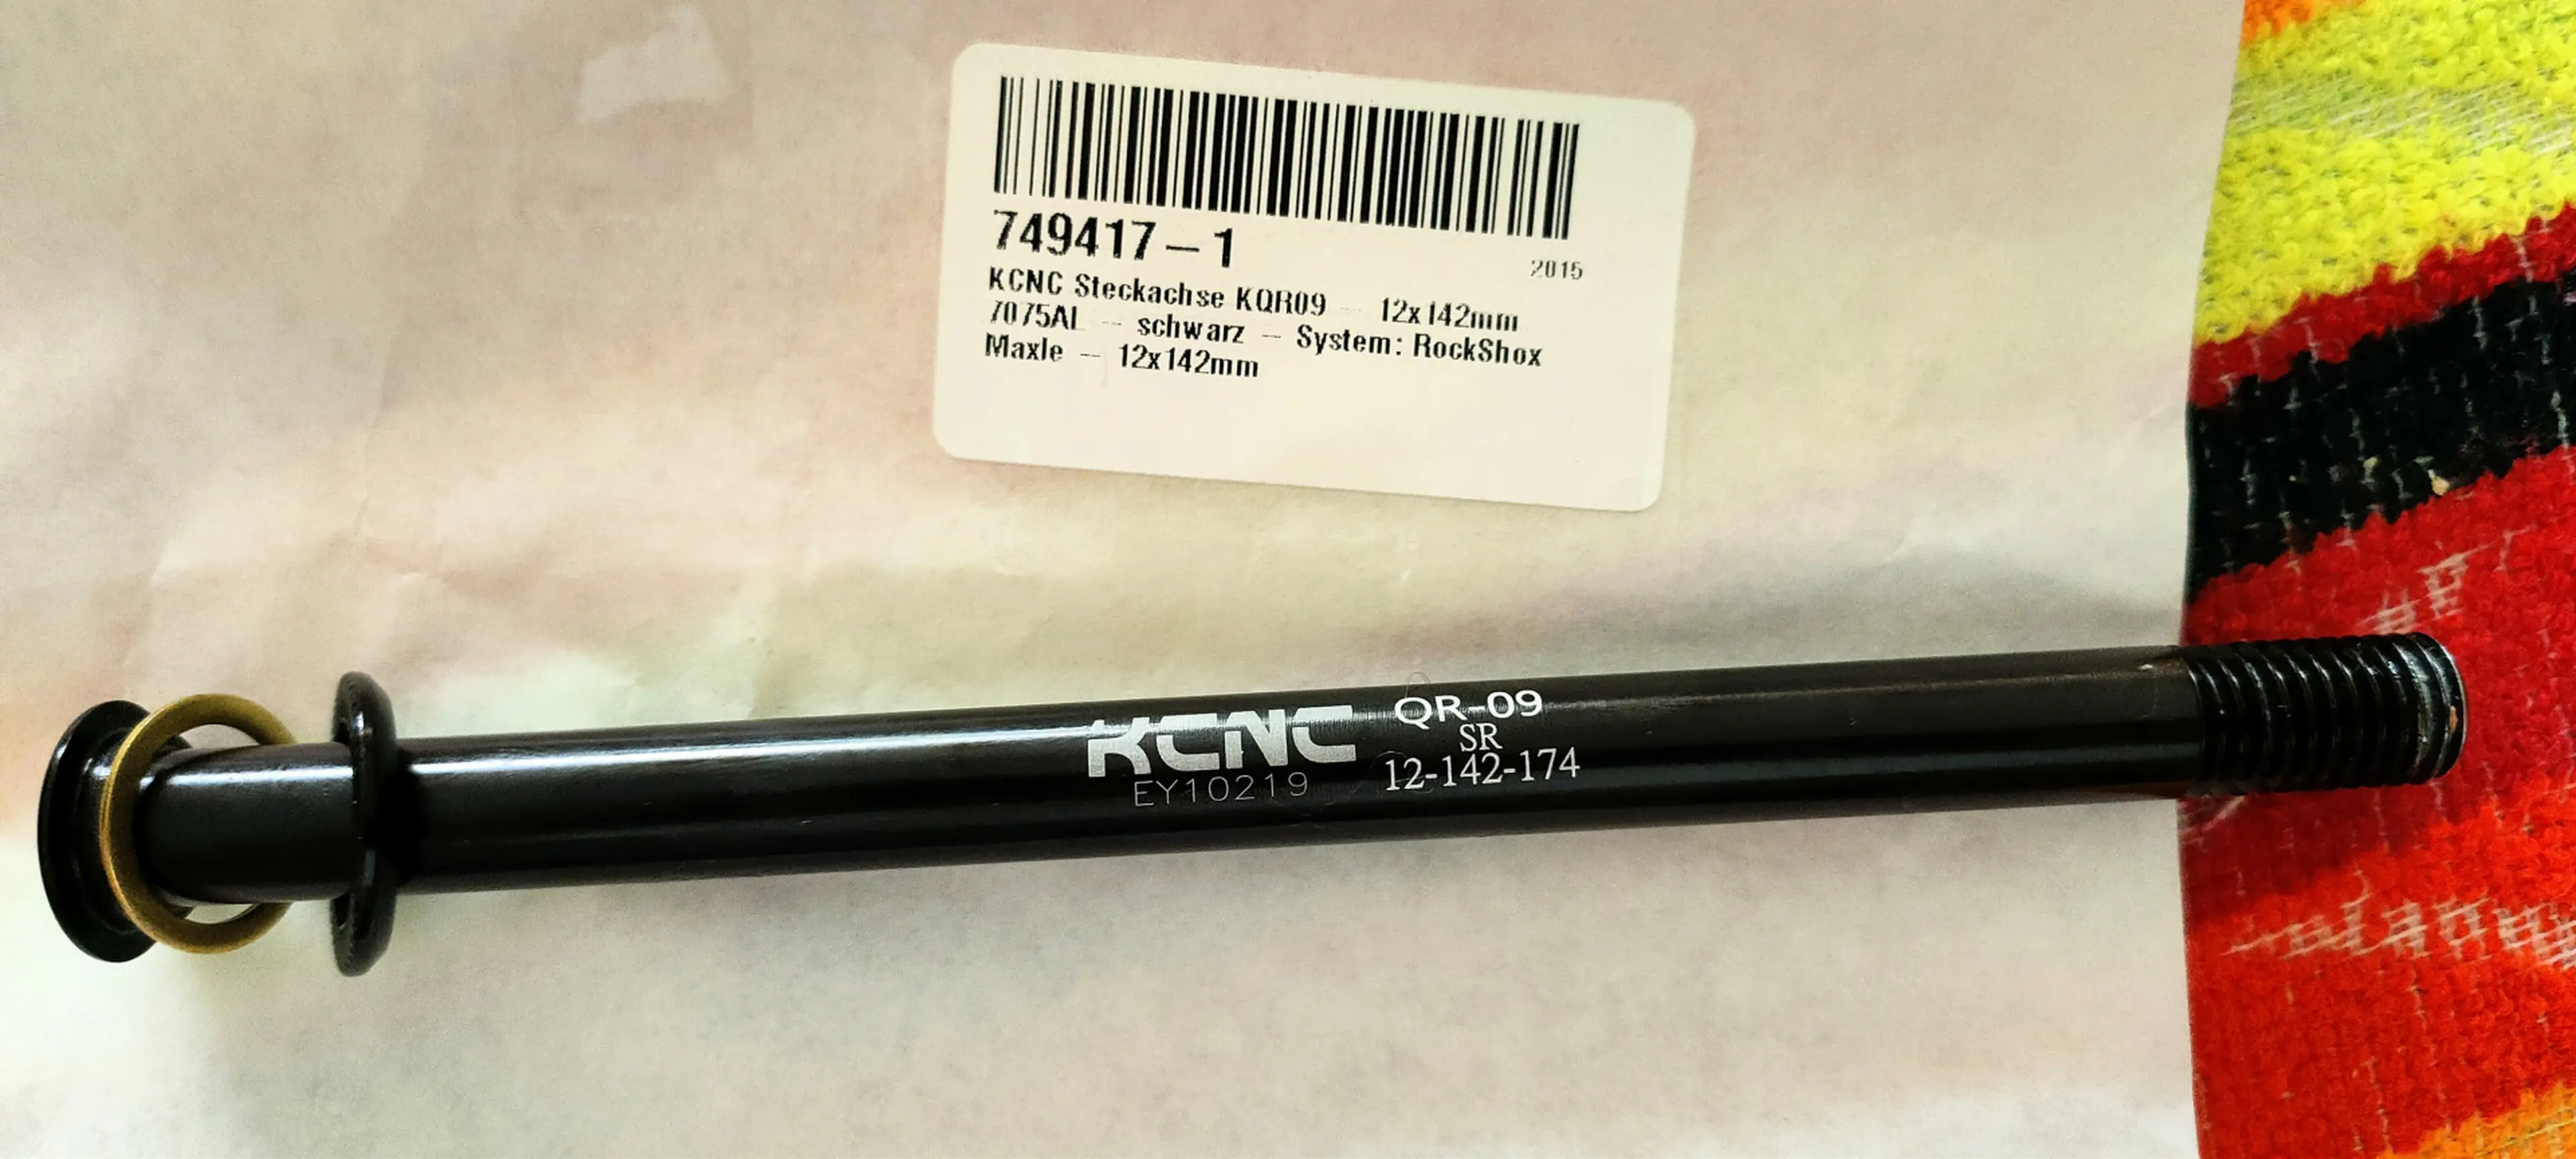 3. KCNC Thru Axle KQR09 - 12x142mm - 7075AL - black